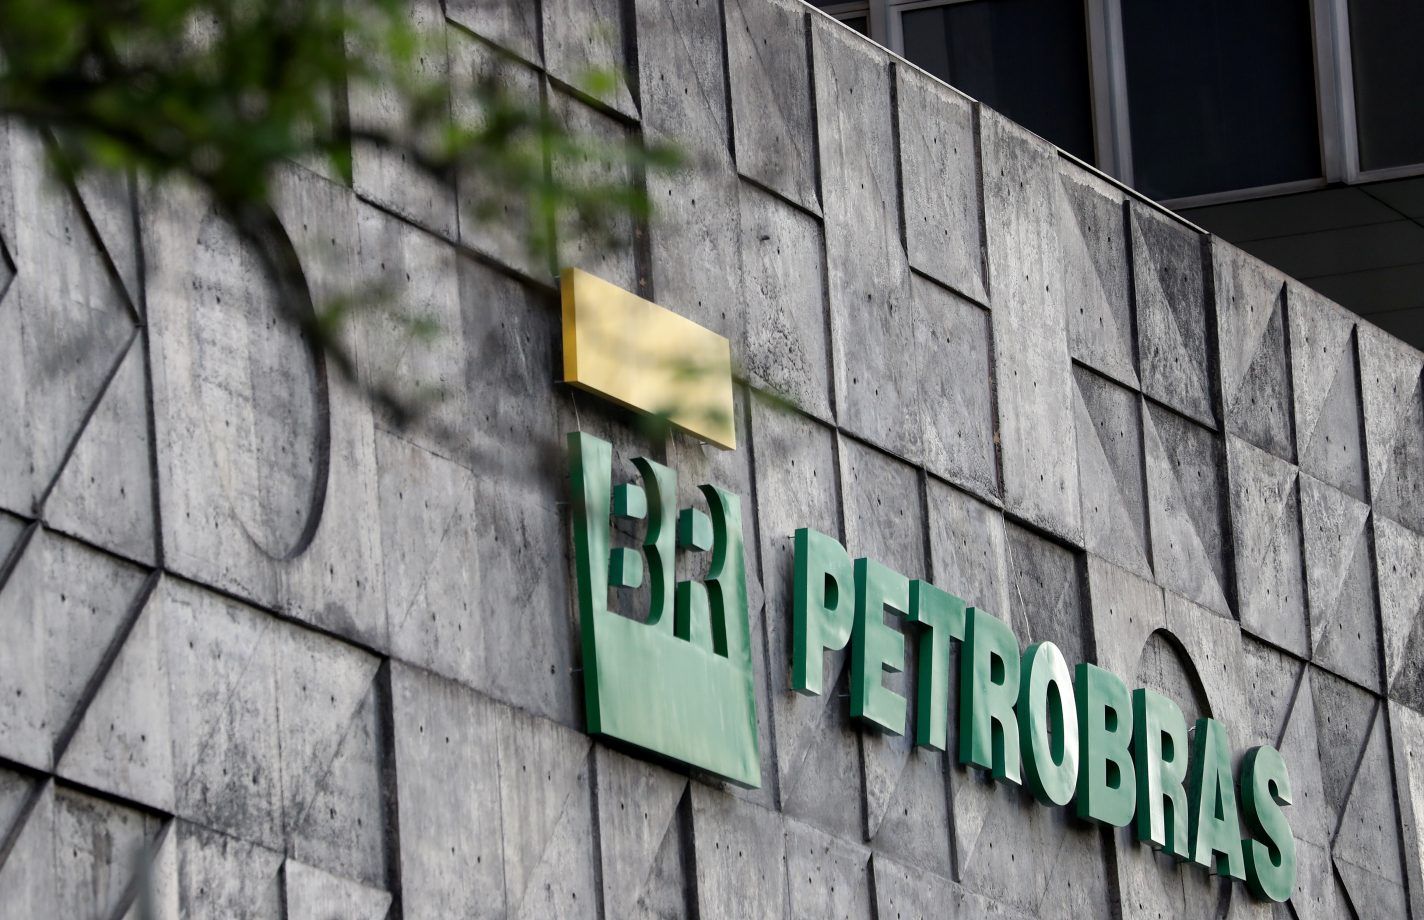 Petrobras pede desemboldo de 8 bilhões de dólares aos bancos para reforçar liquidez